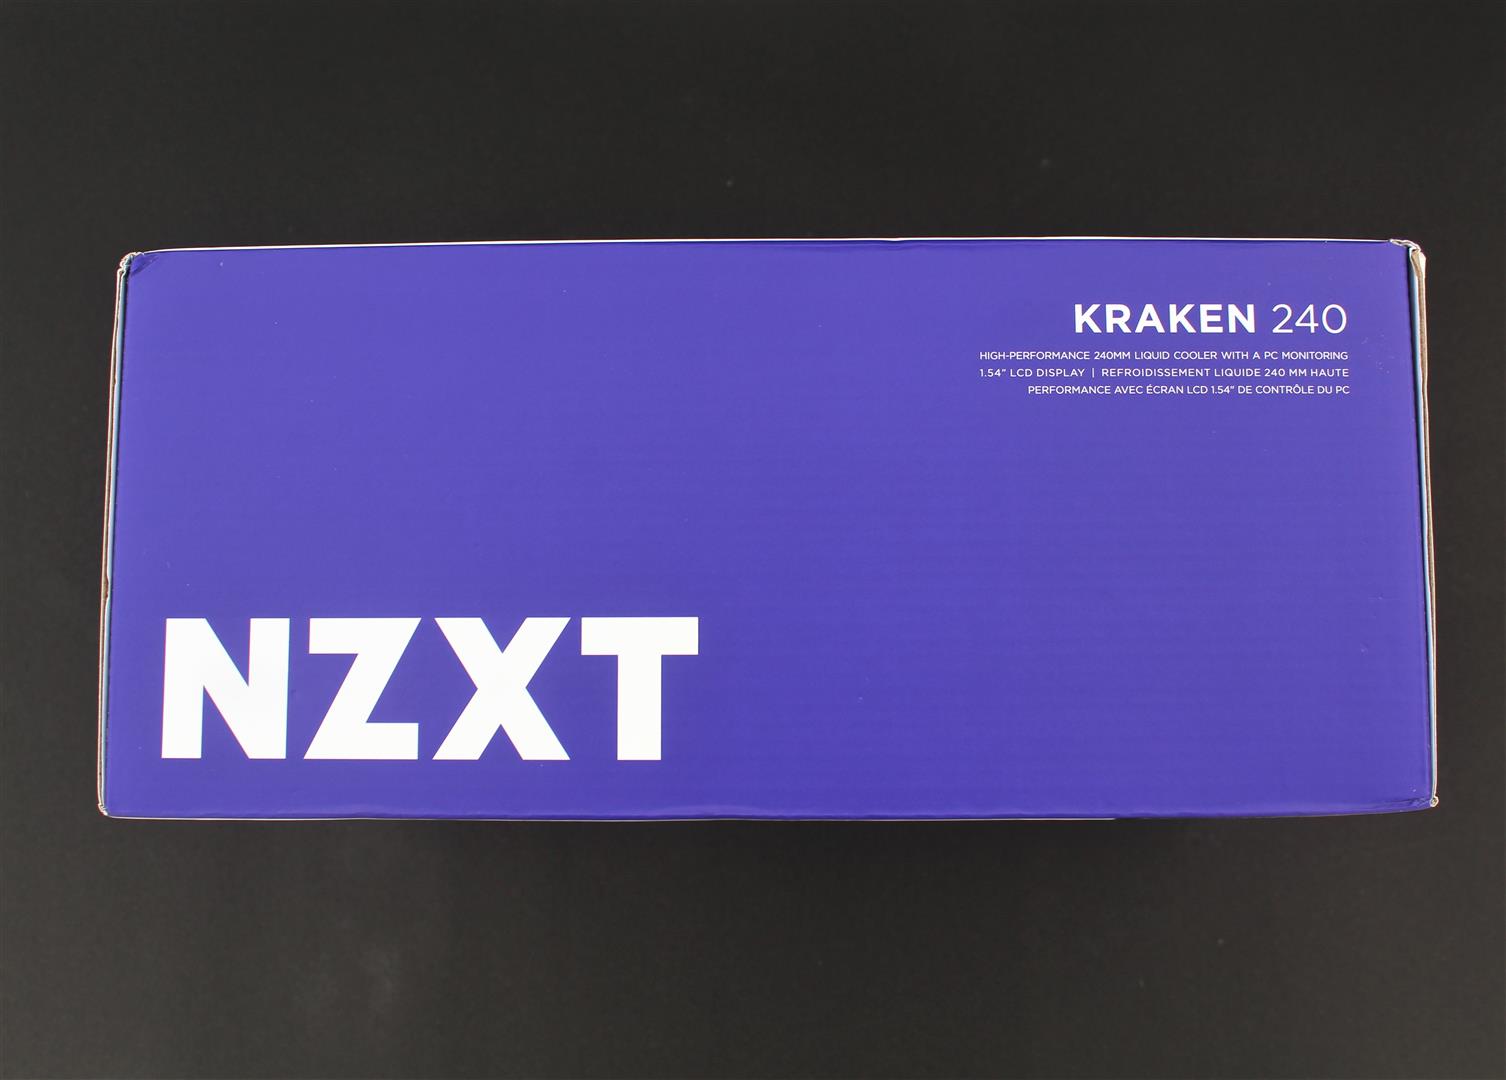 NZXT KRAKEN 240 Review REVIEWS PC TeK Liquid Cooler 